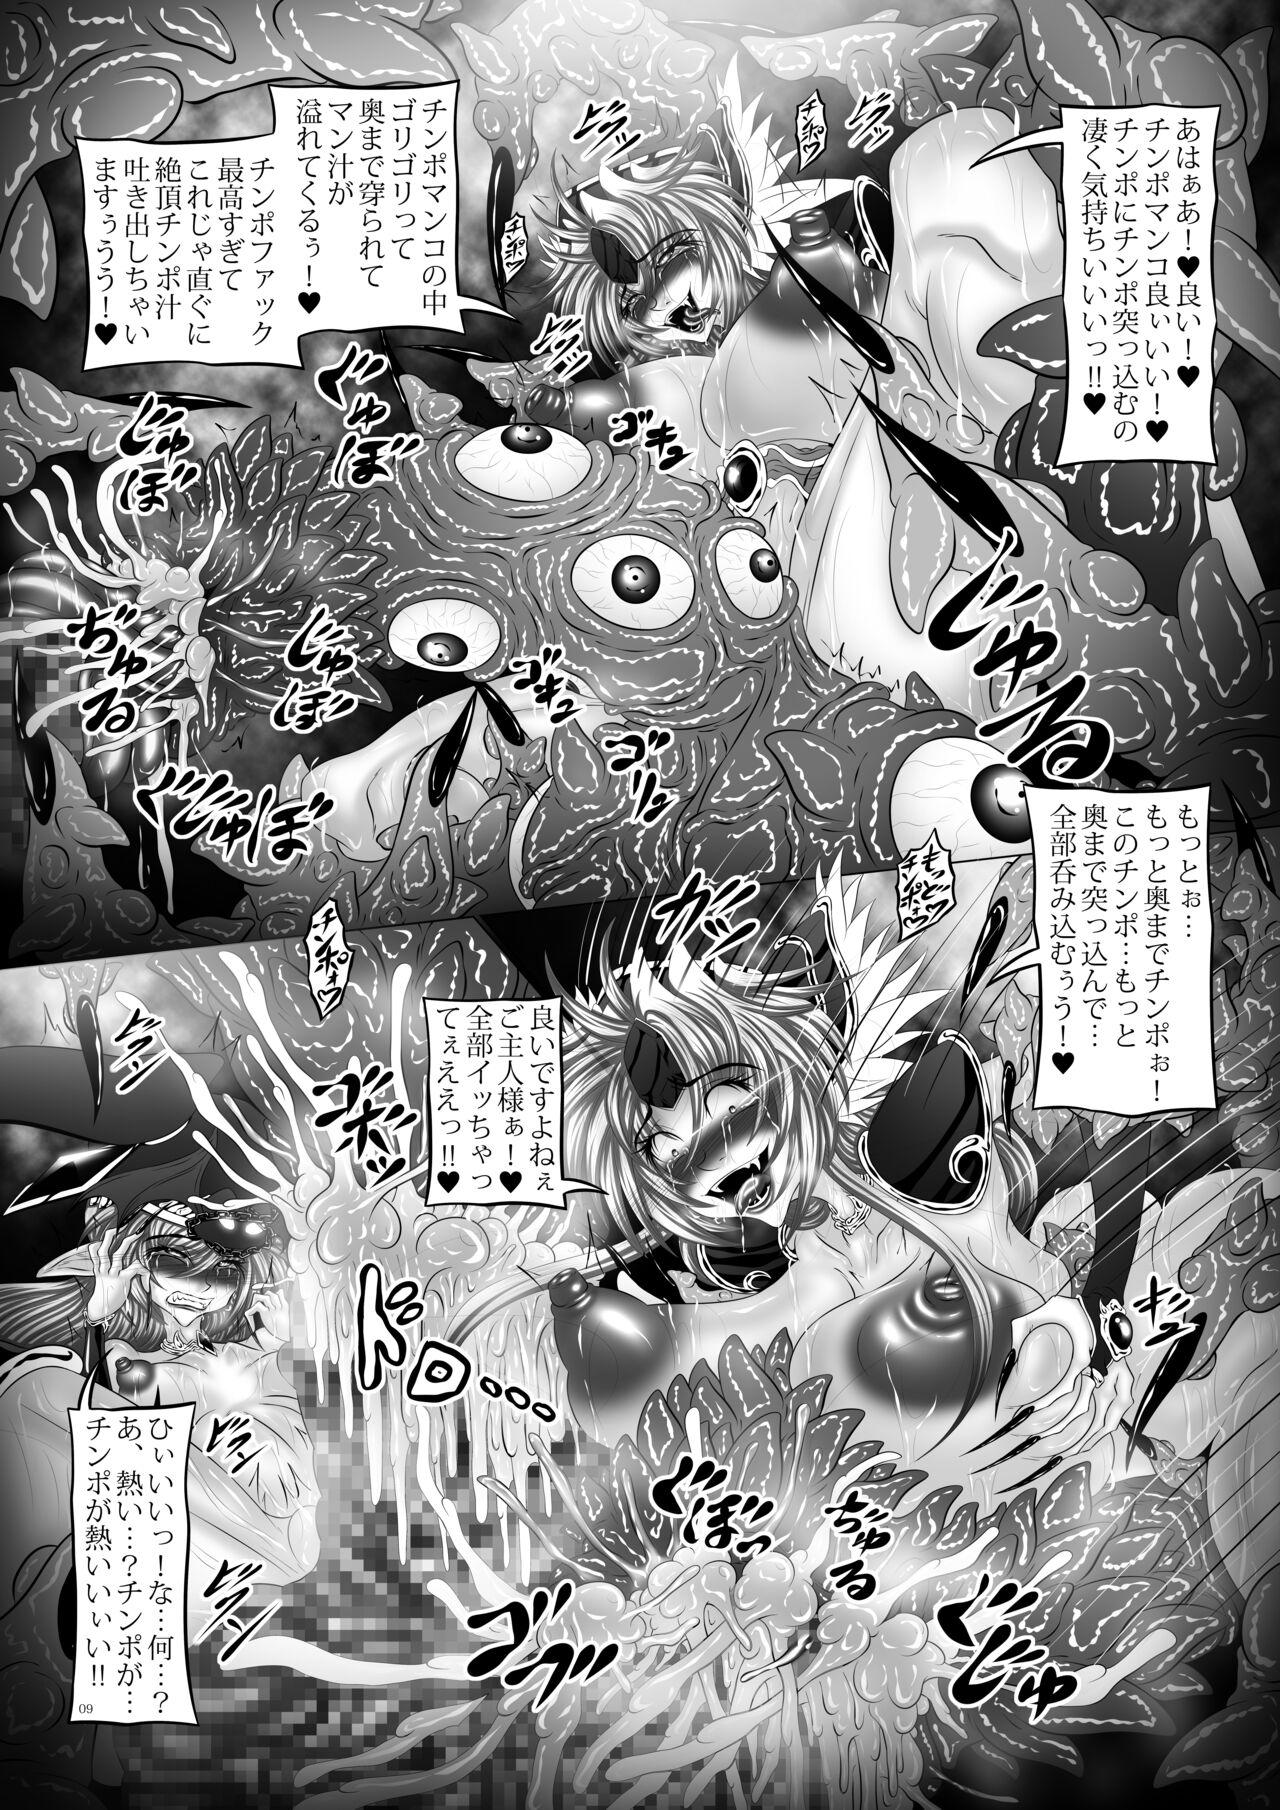 Bareback Dragon' s Fall V - Seiken densetsu 3 Maid - Page 8